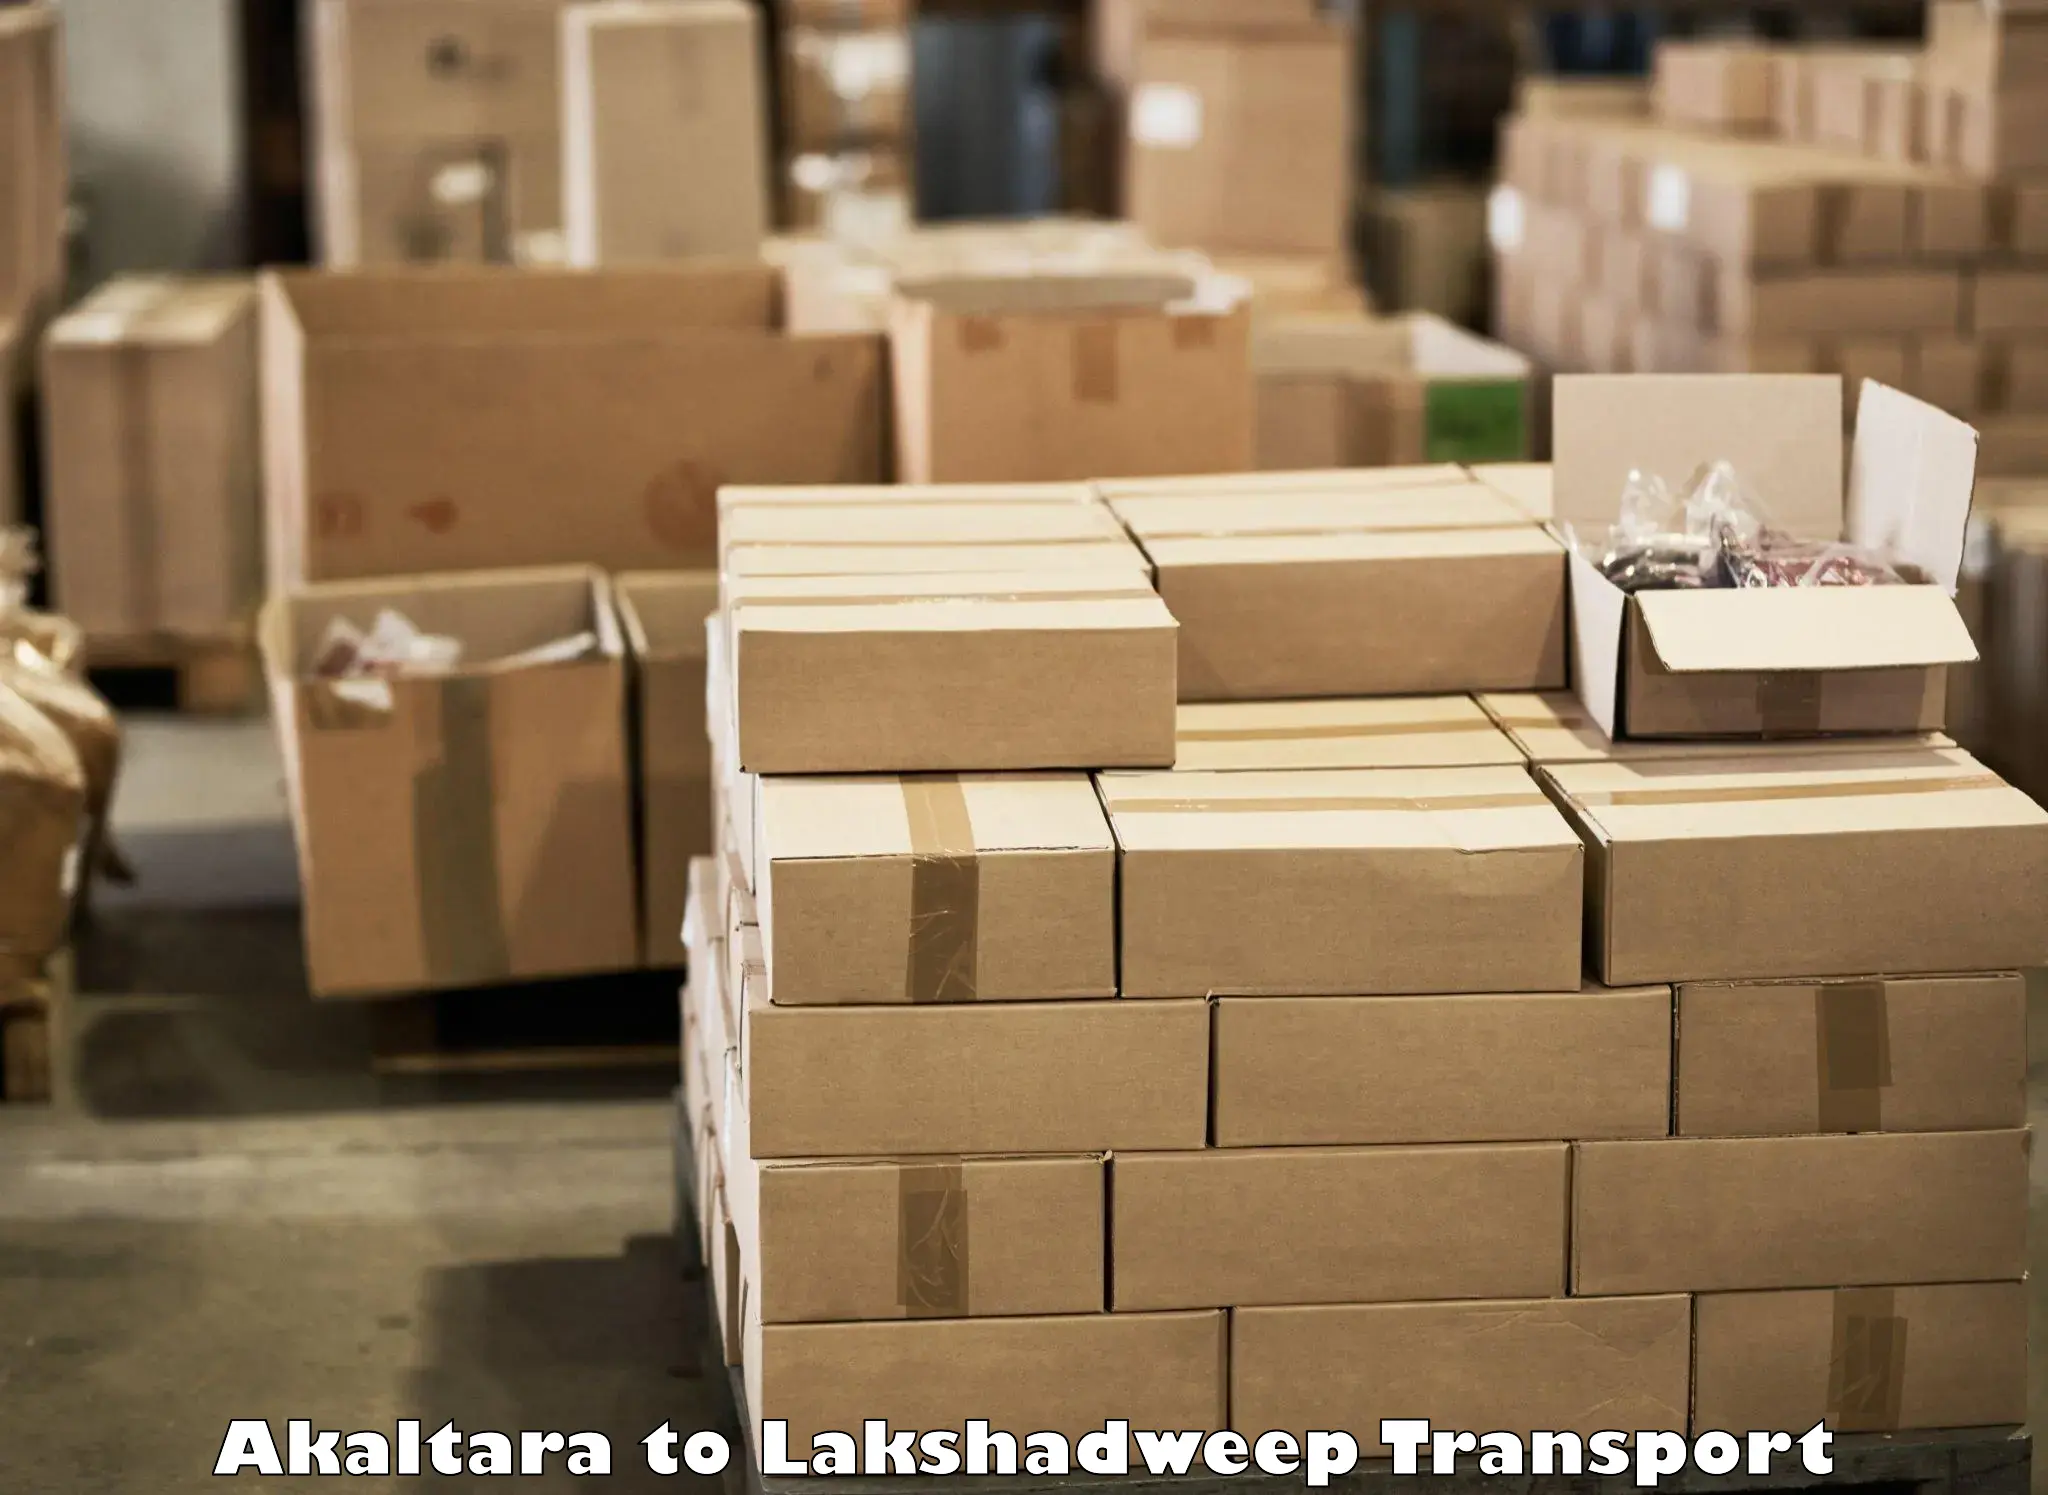 Intercity transport in Akaltara to Lakshadweep